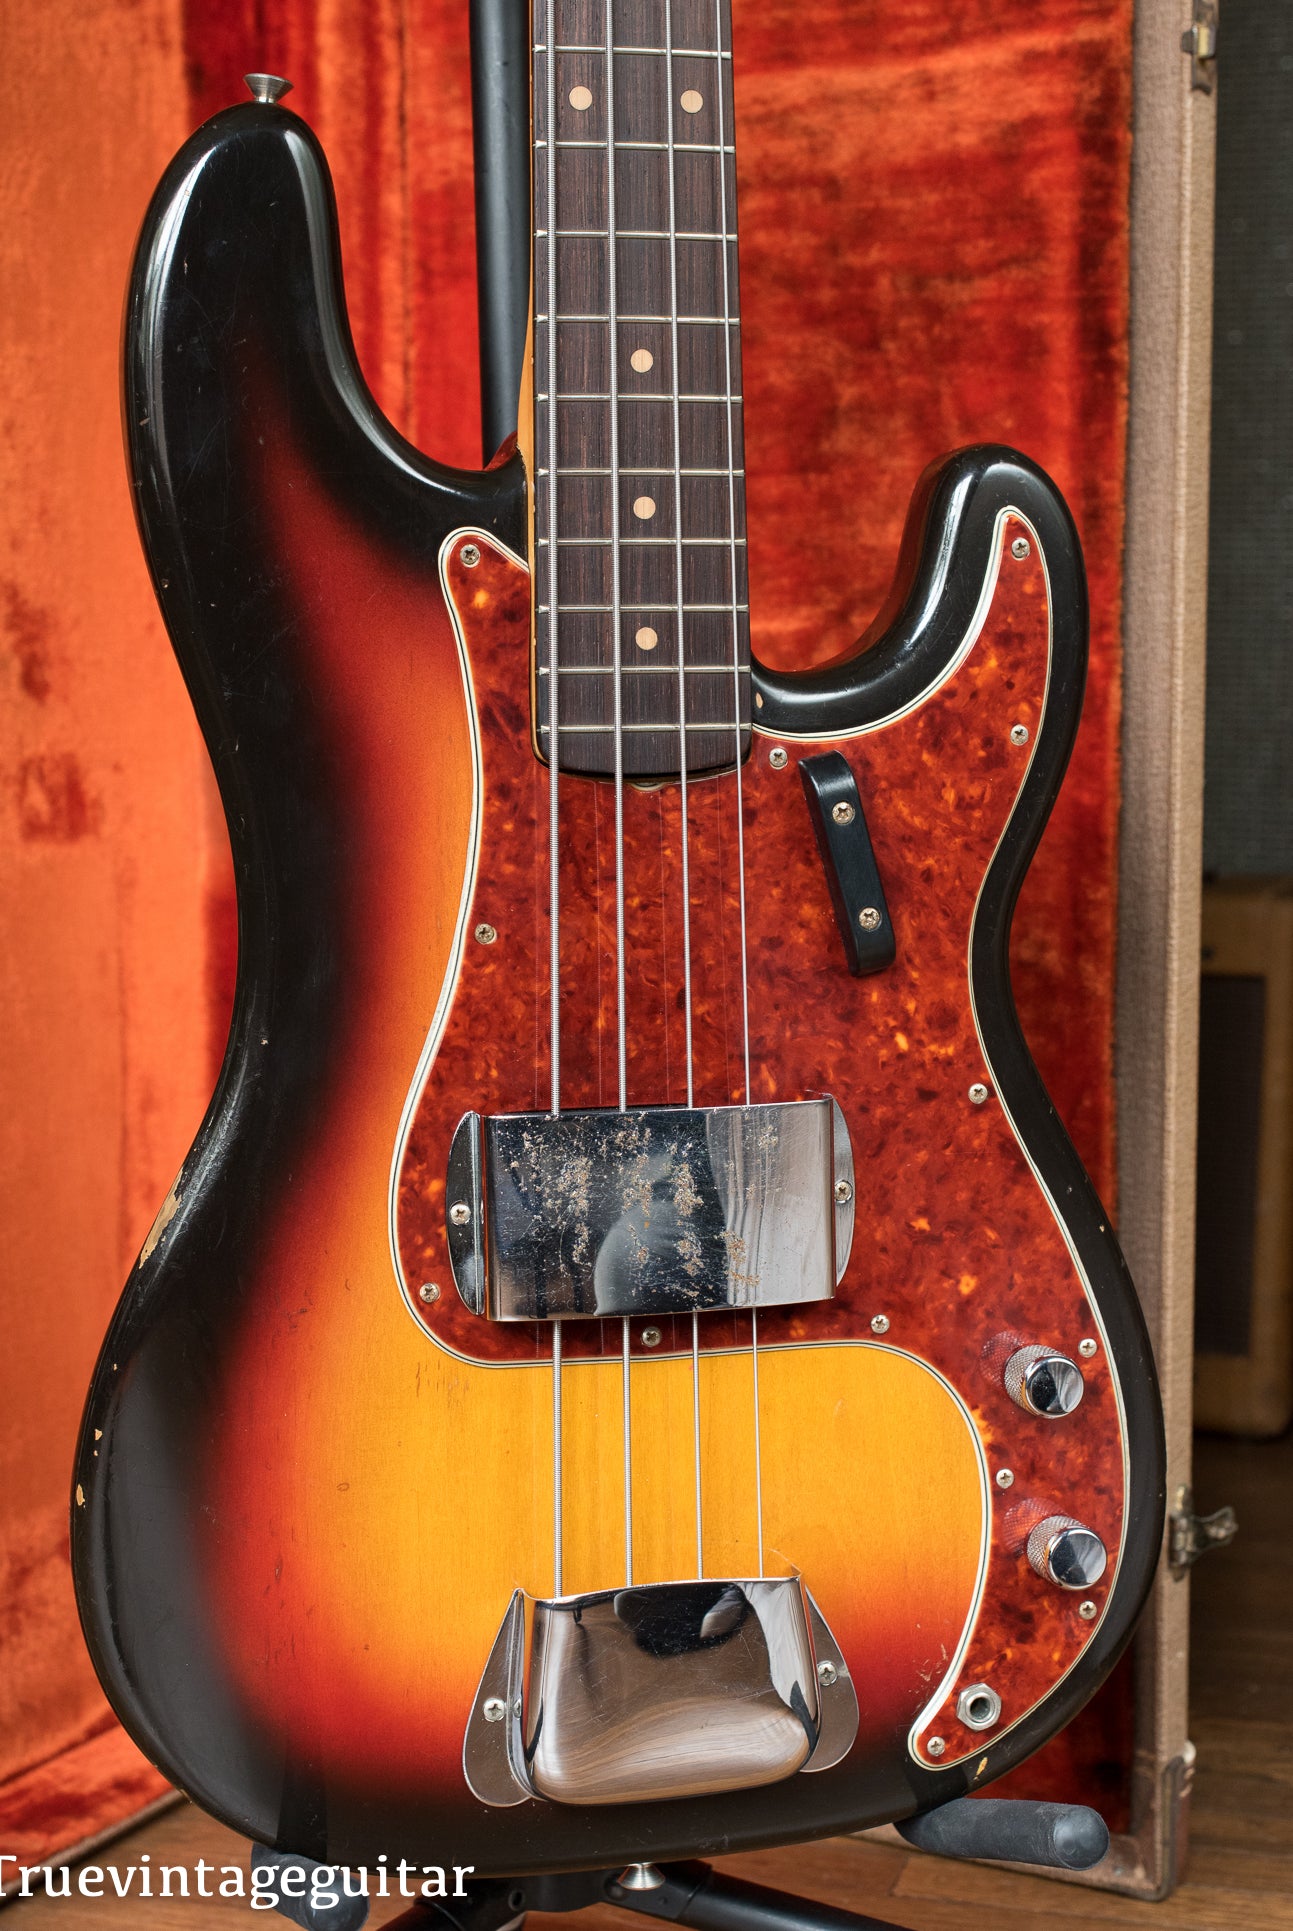 Fender Precision Bass Guitar 1963 vintage original